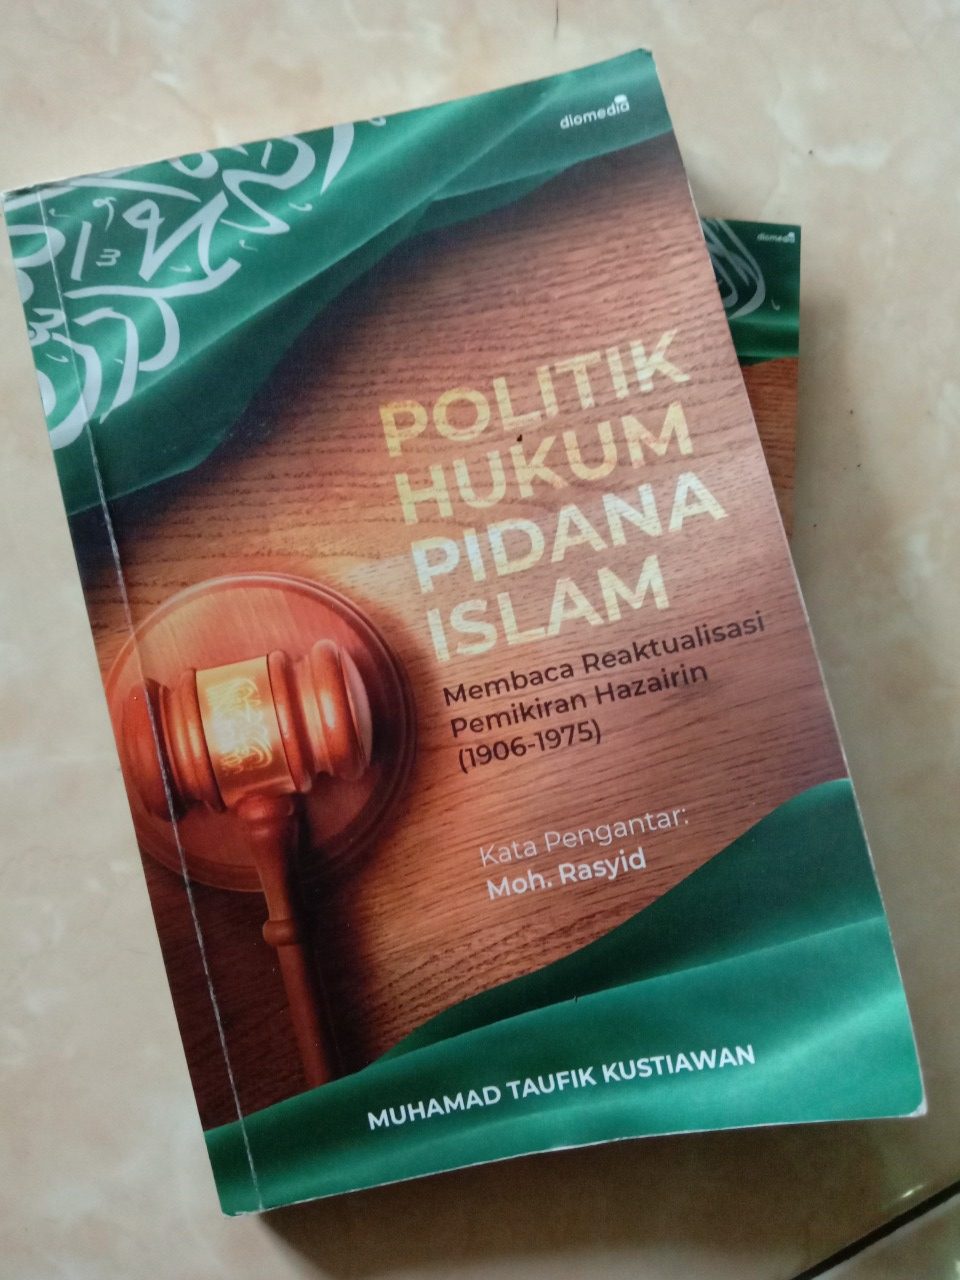 Hazairin: Sang Pembaharu Hukum Islam di Indonesia